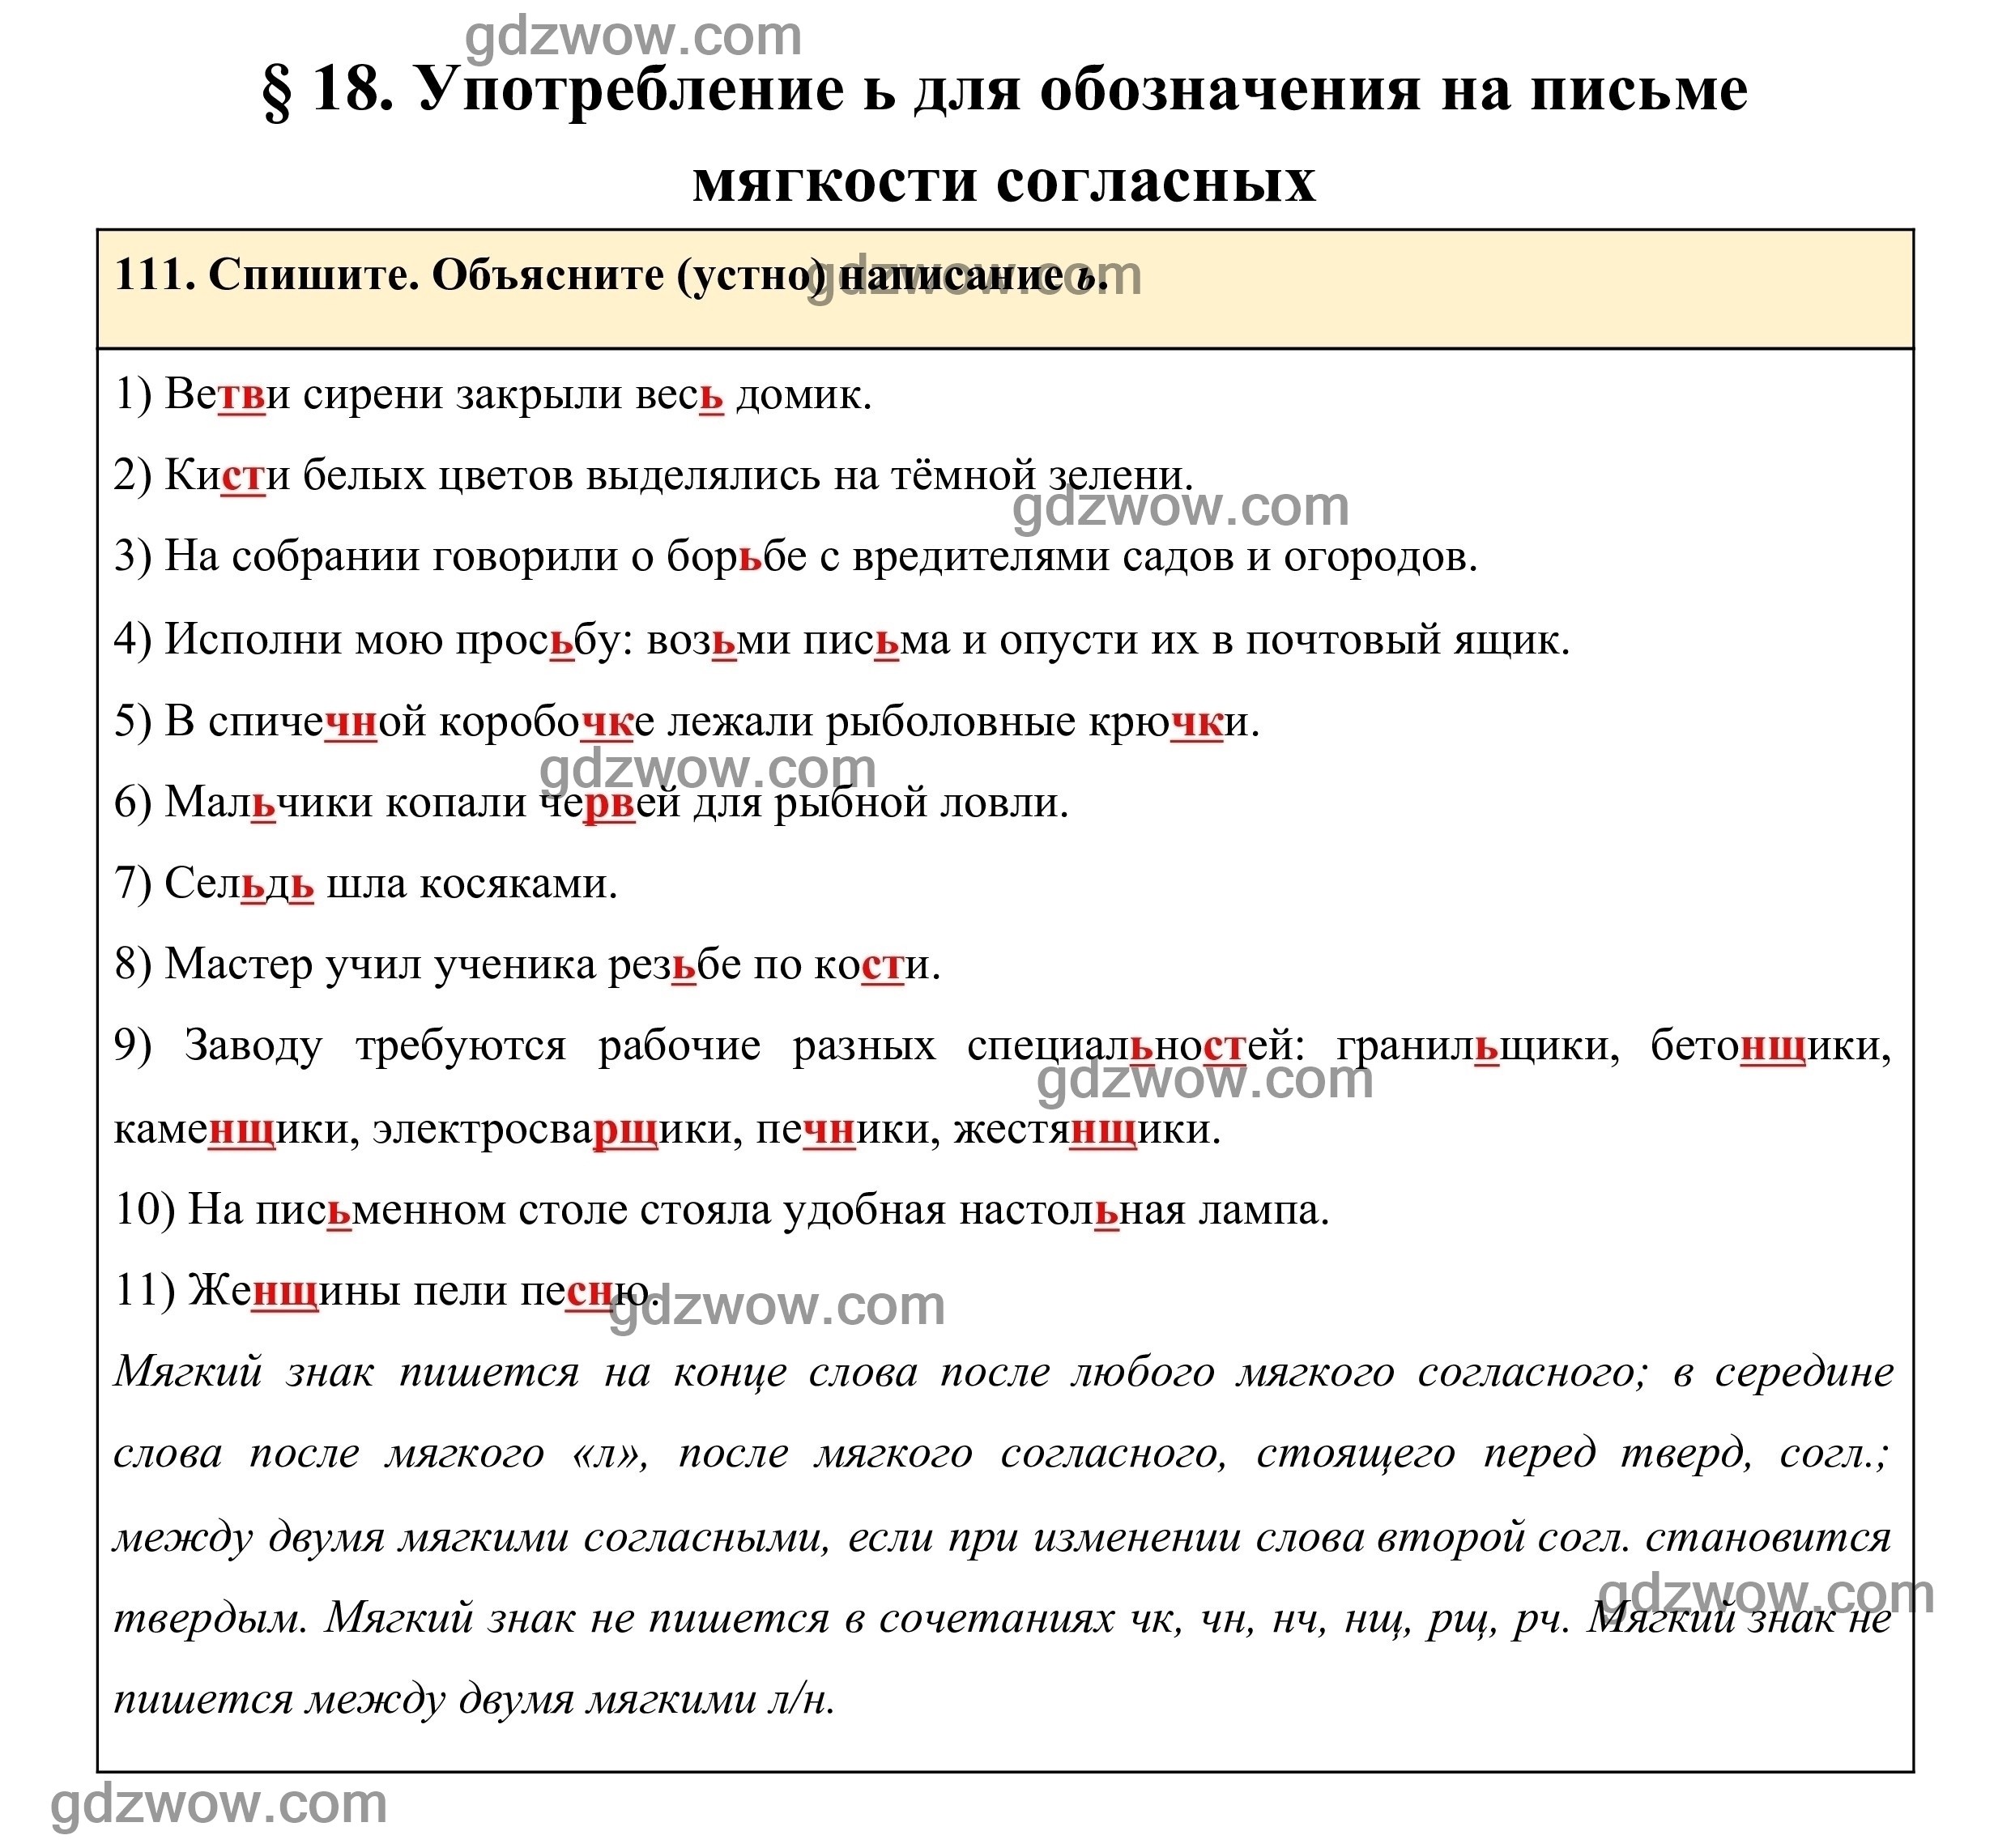 Перепишите и объясните устно написание частиц. Русский язык 10 класс 111 упражнение. Unit 111 exercises 111.1 ответы щт Фе ин цшер.